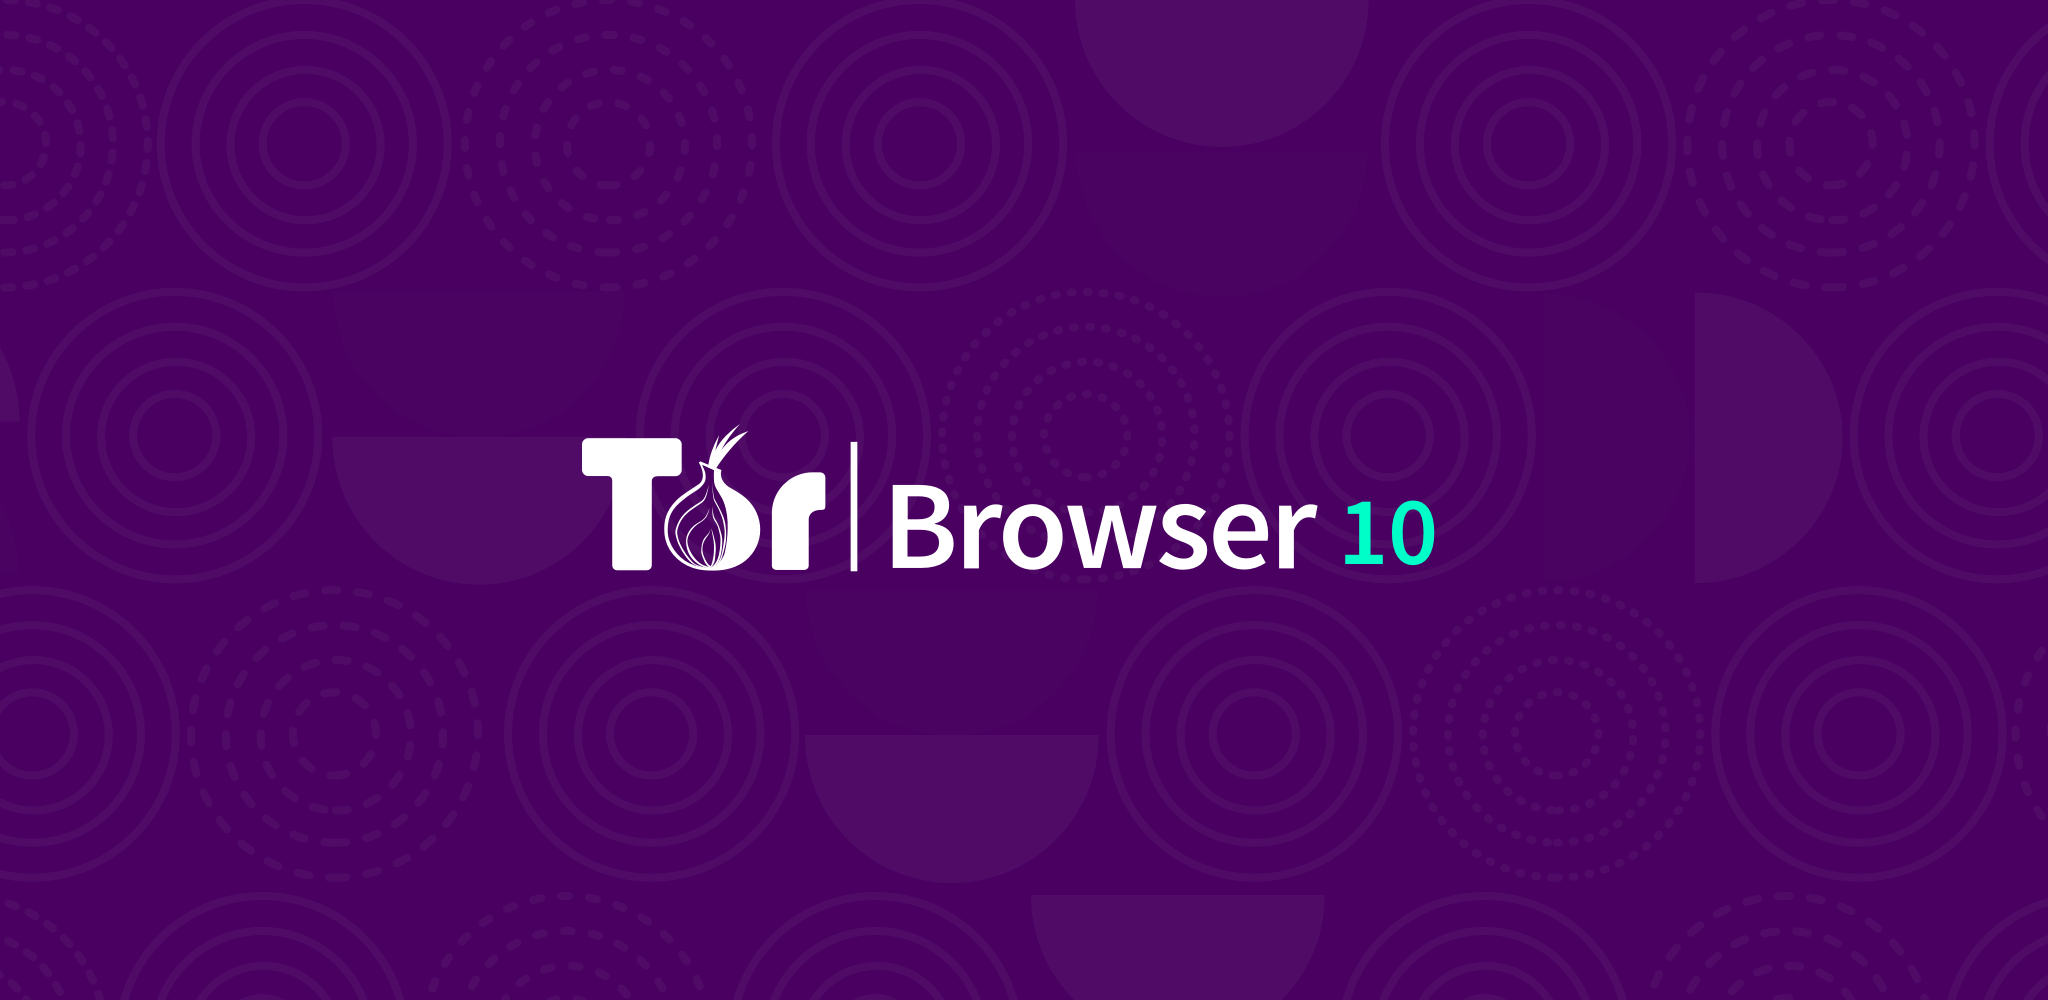 tor browser скачать новый hydra